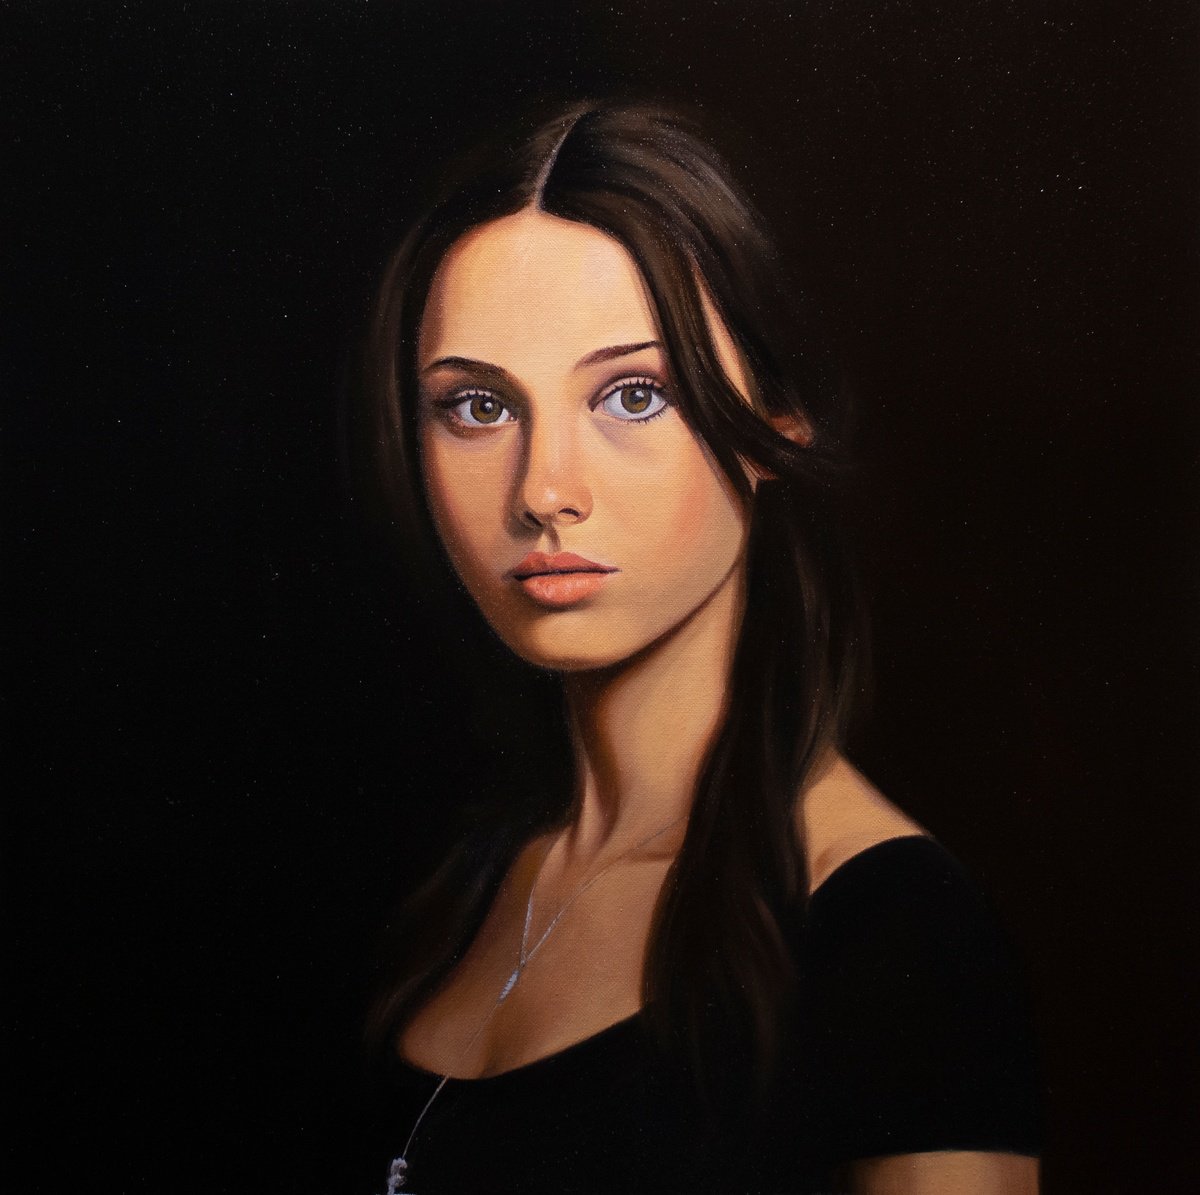 Portrait of woman - 2208232 by Gennaro Santaniello